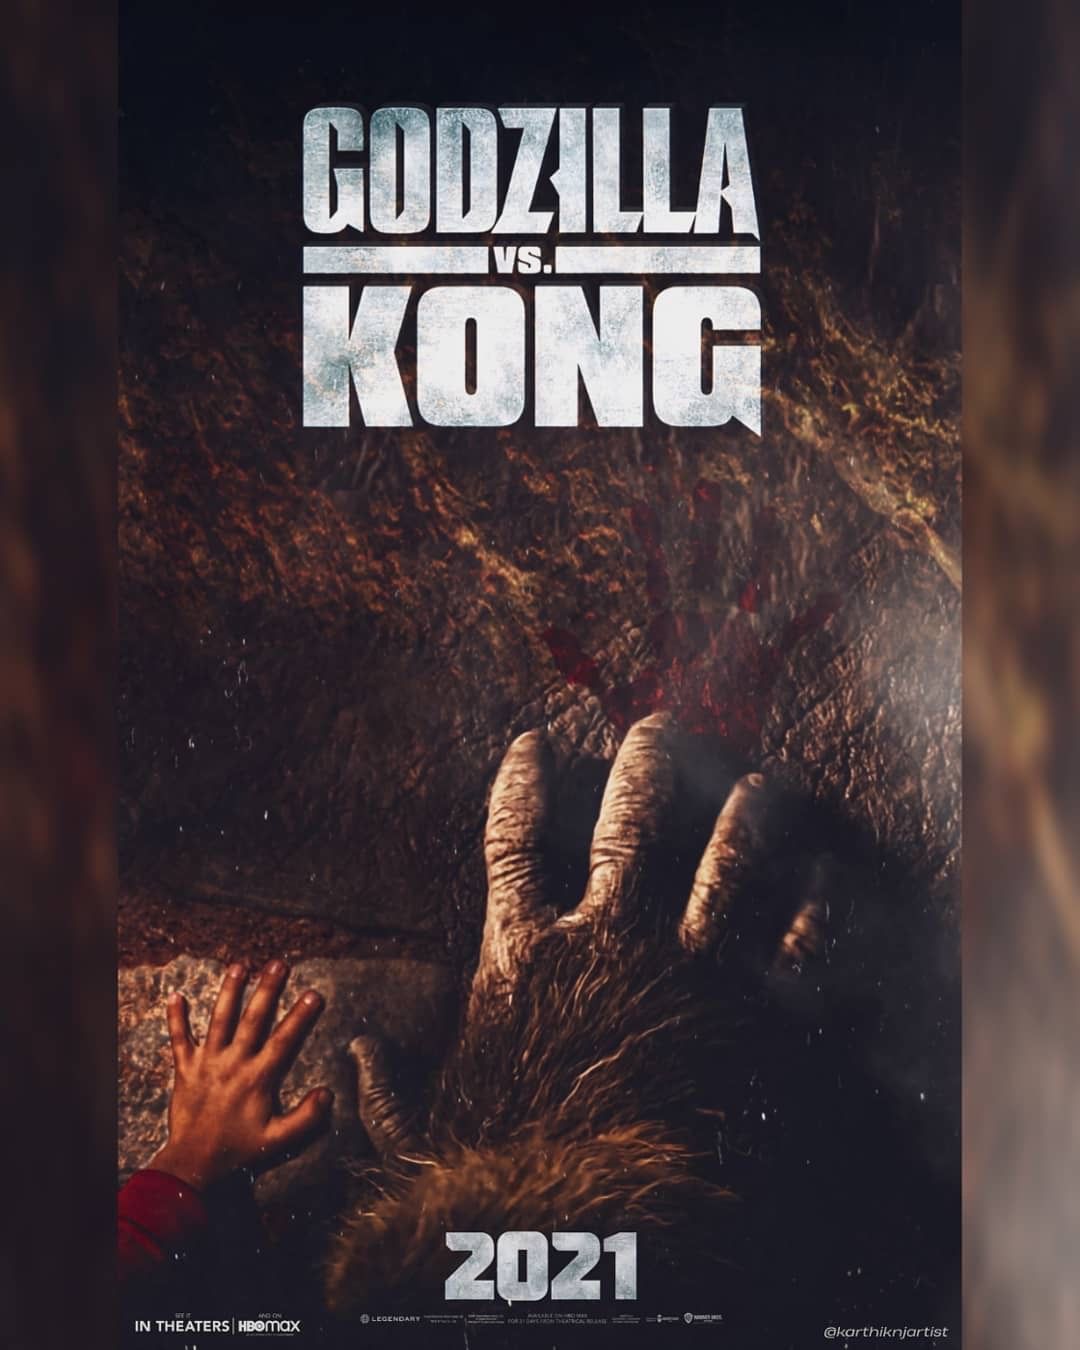 Kong's hand poster. Godzilla vs. Kong